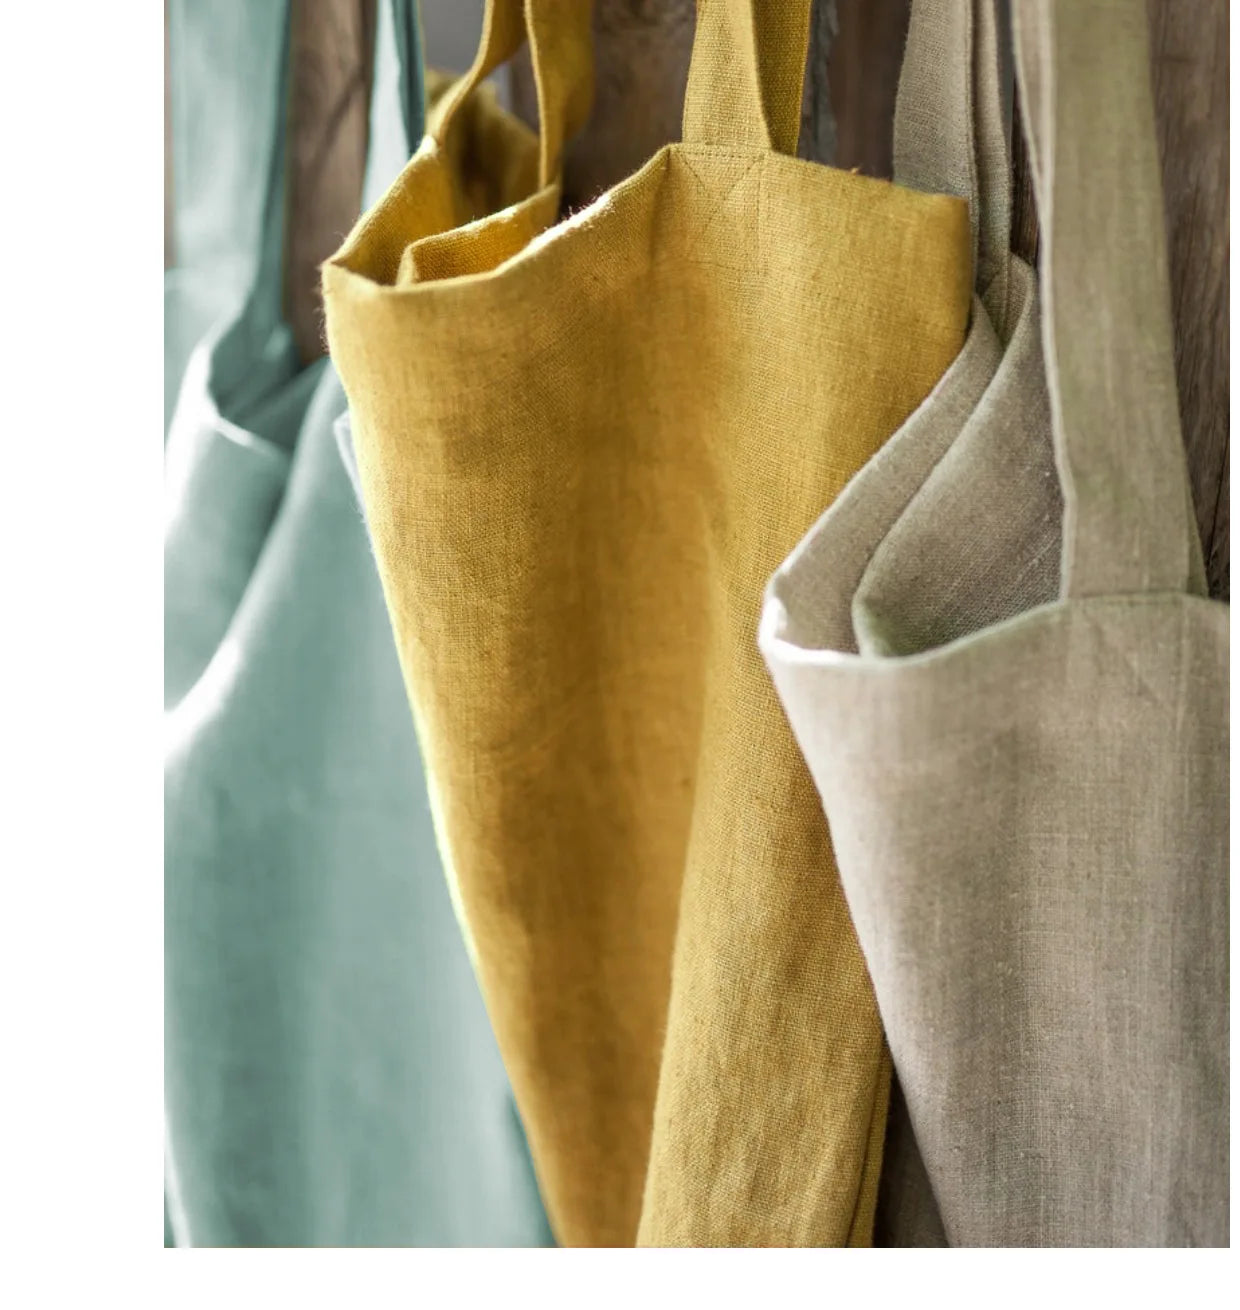 Cotton-Linen Tote Bag